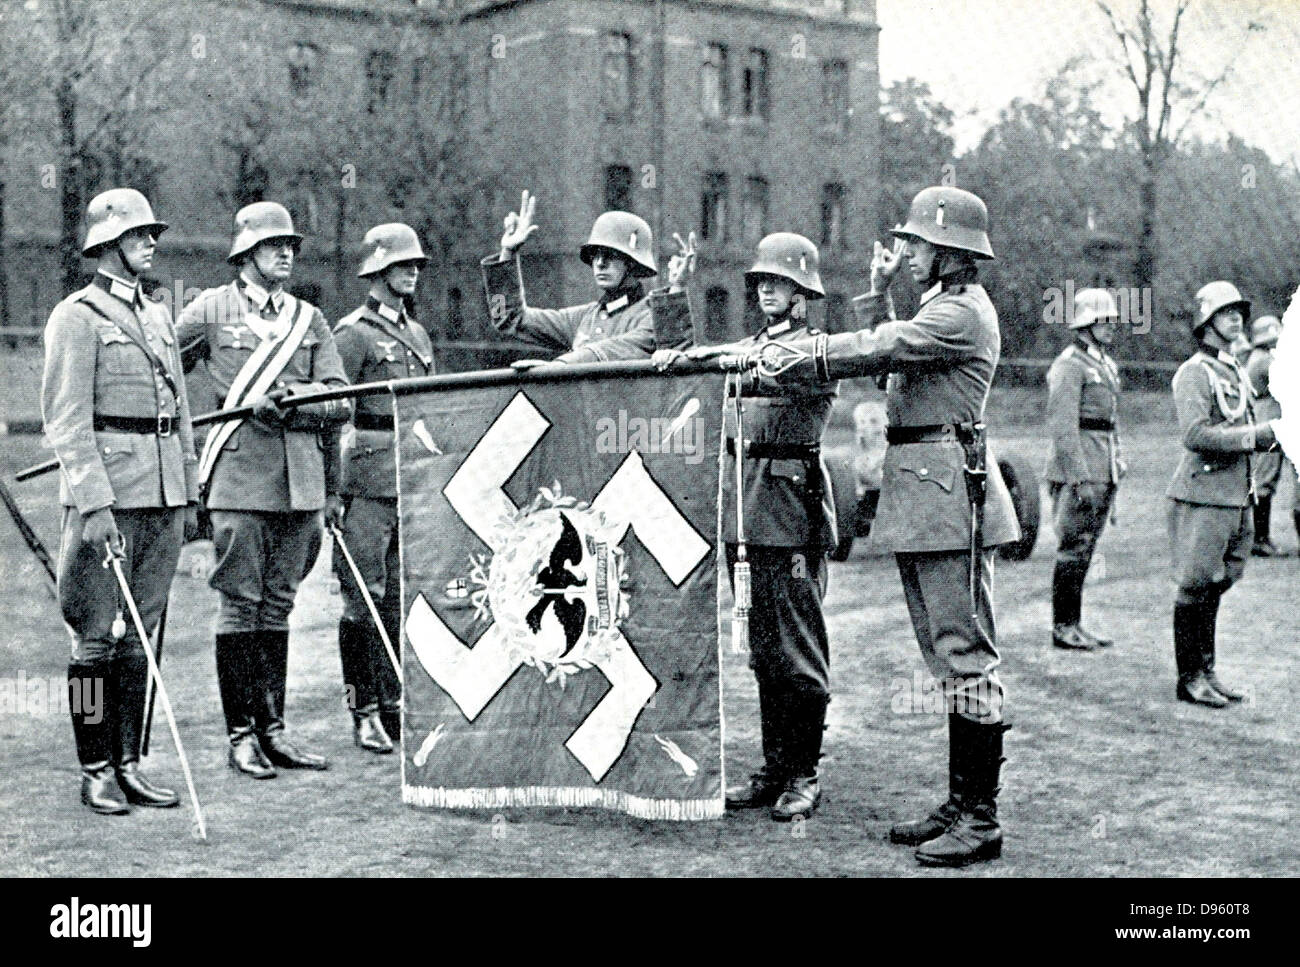 Bundeswehr-Rekruten schwören Treue auf die Nazi-Partei und des Staates, 1935. Stockfoto